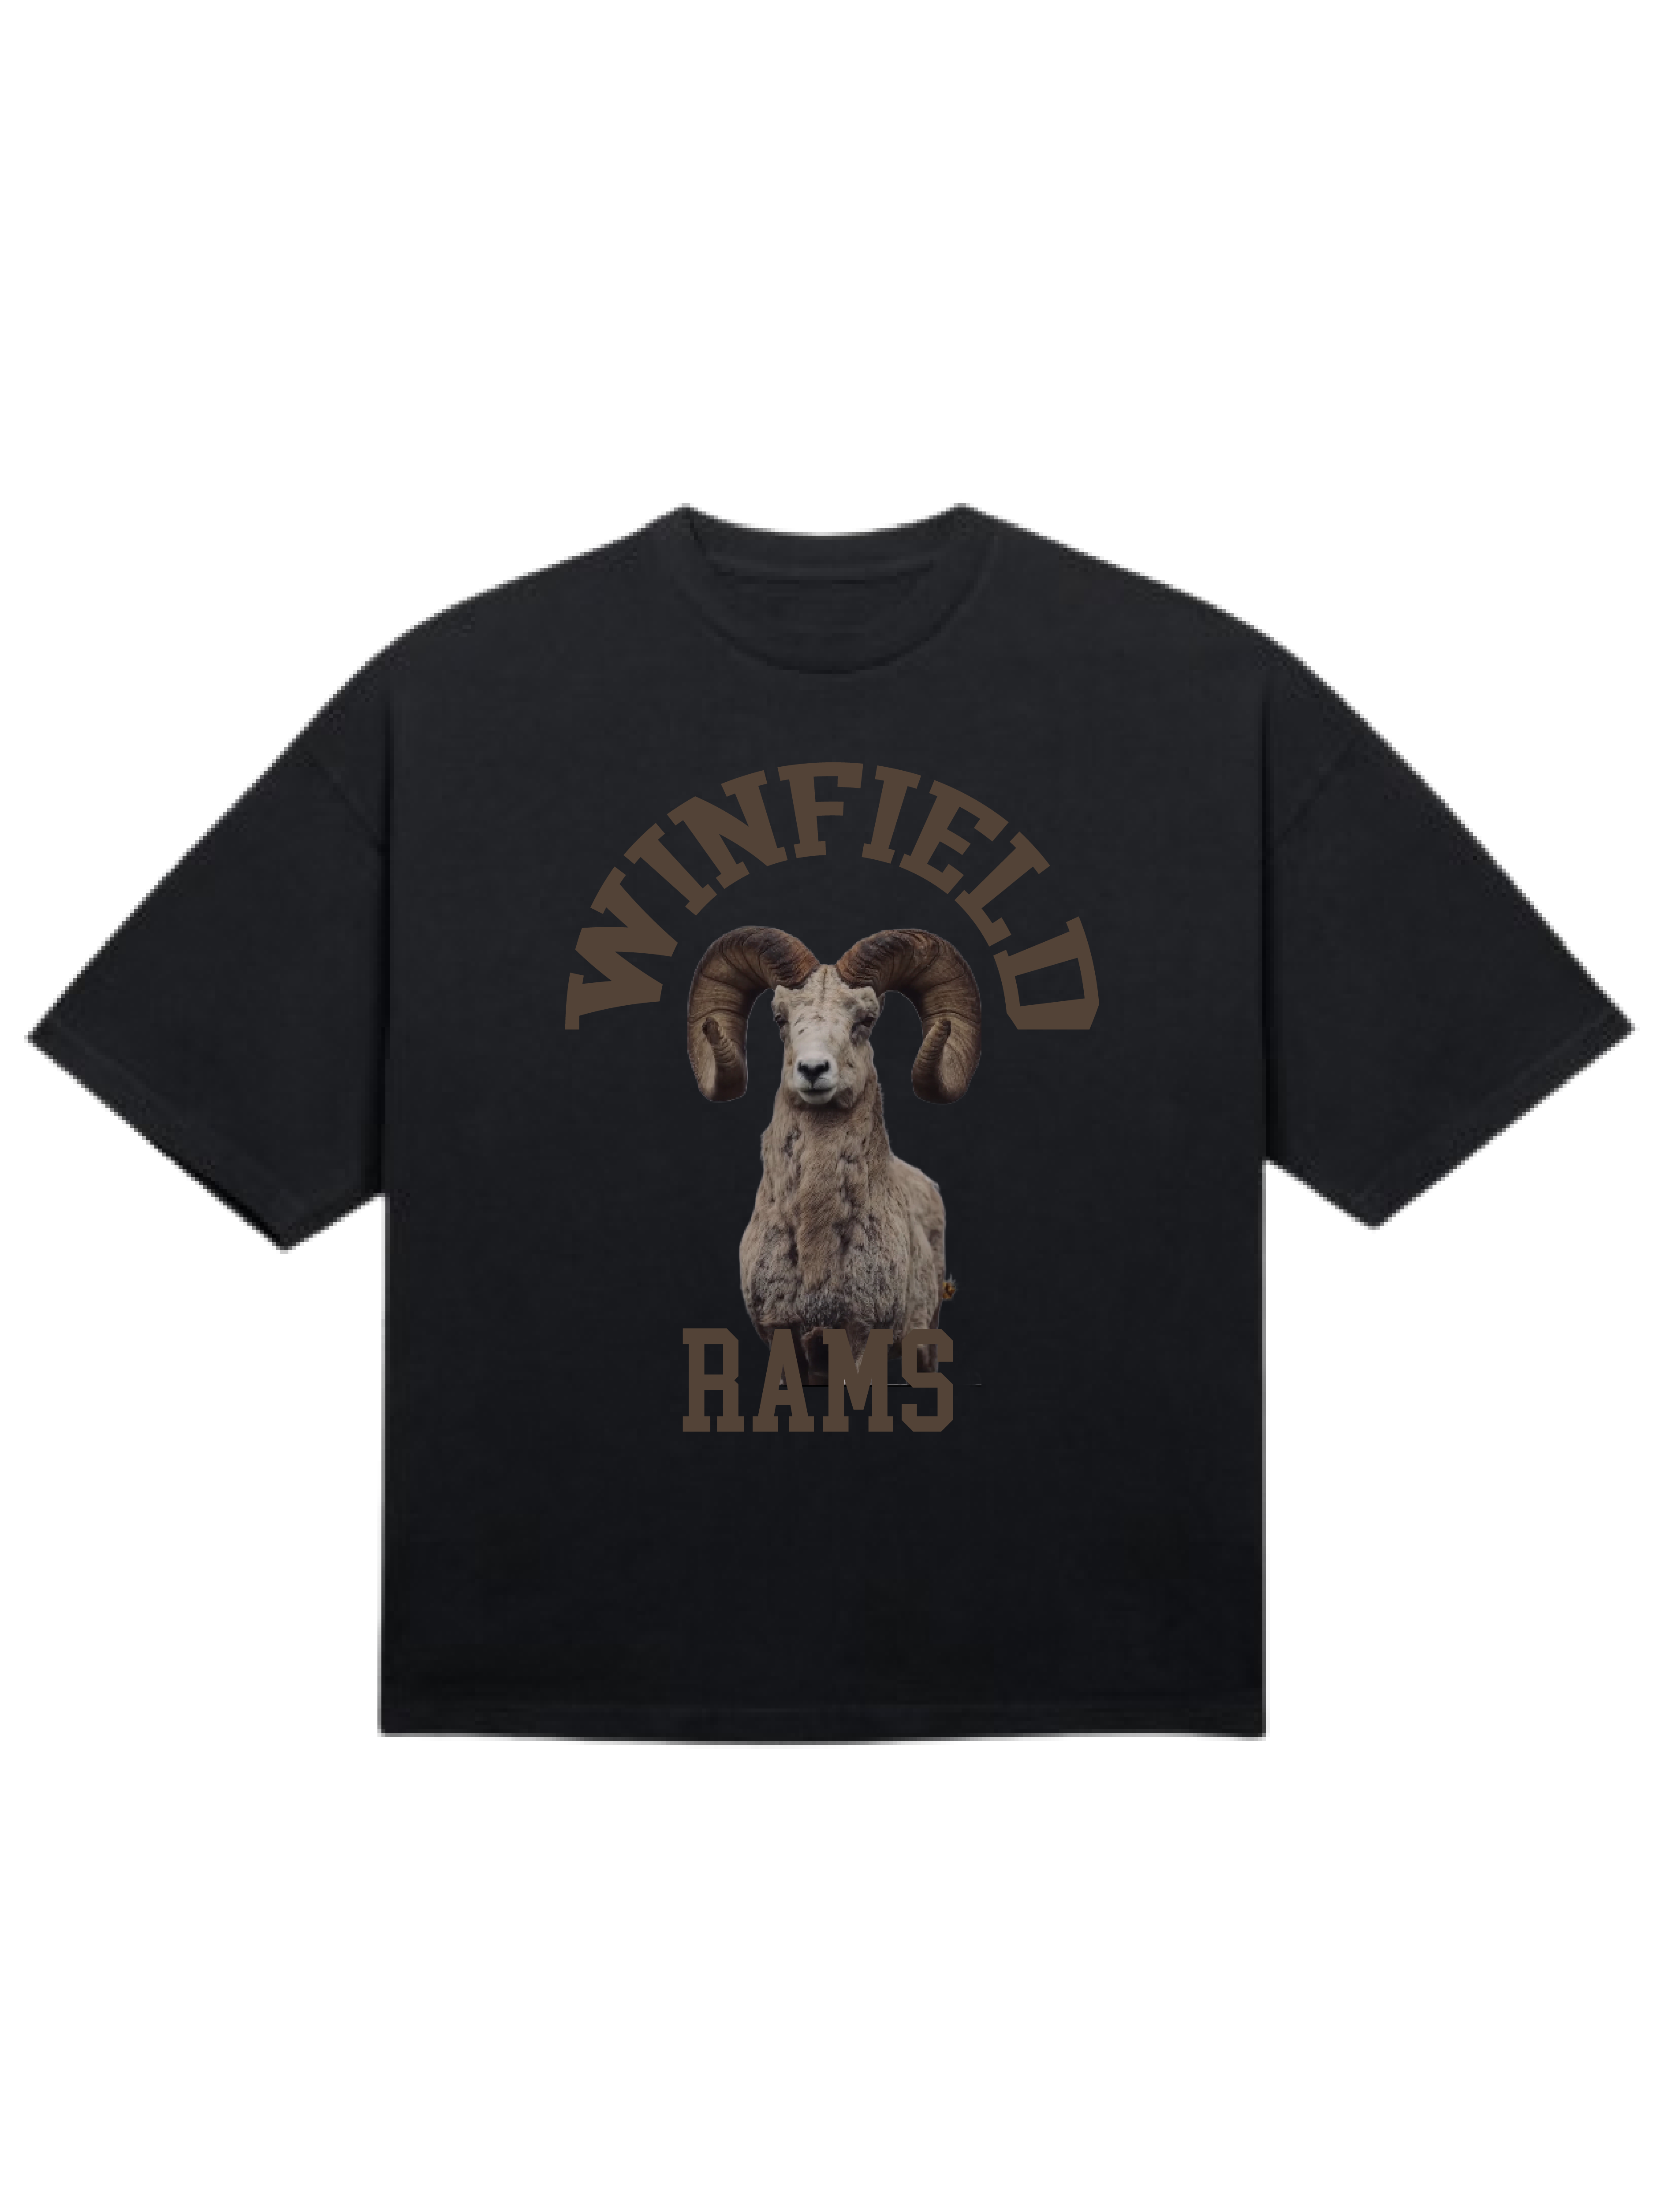 Winfield Rams T Shirt v2